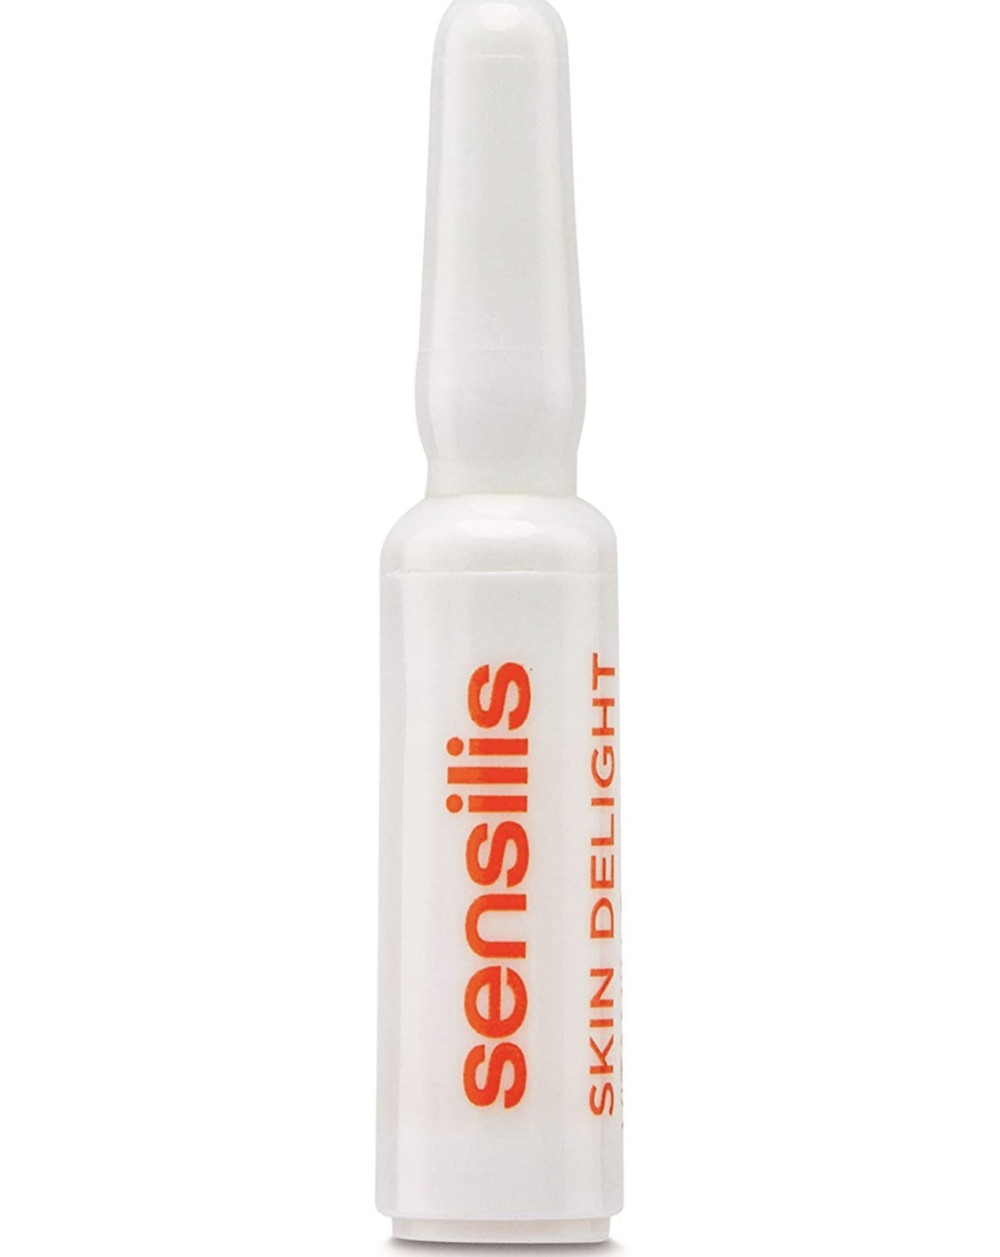 Sensilis ampolla iluminadora Skin Delight 15x1,5 ml